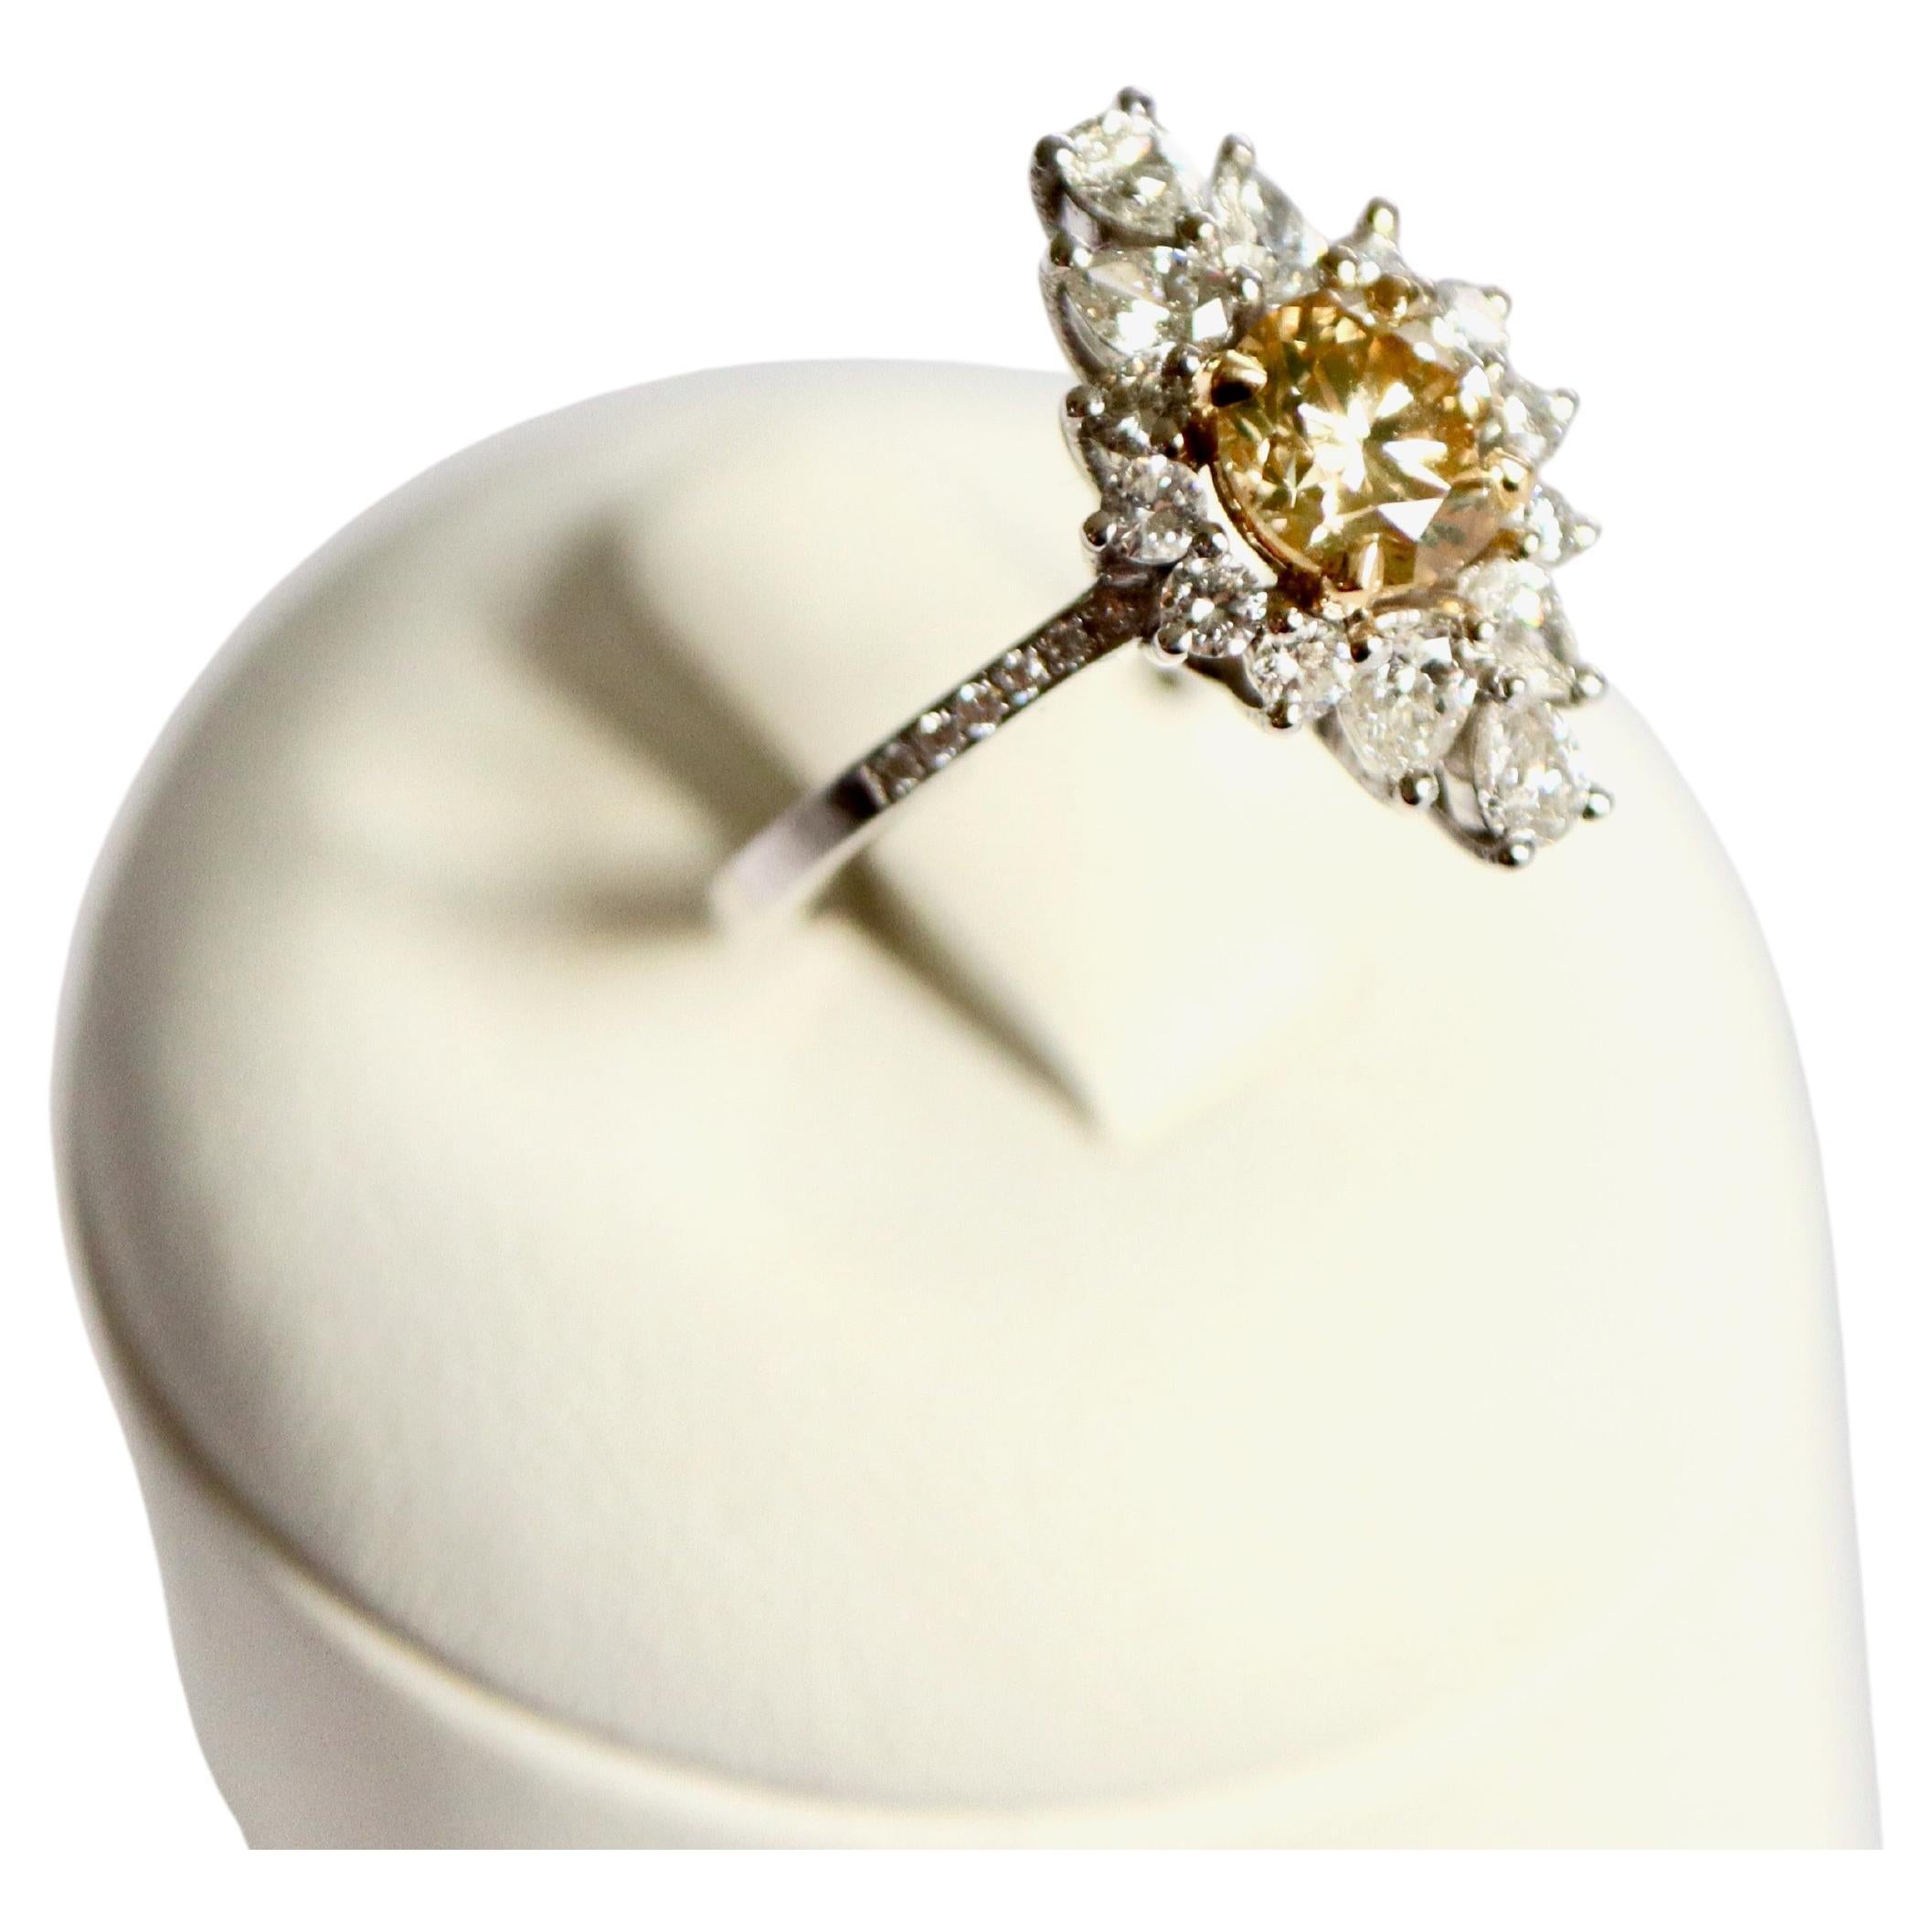 Bague en diamant brun jauneâtre fantaisie avec diamant central de 1,1 carat